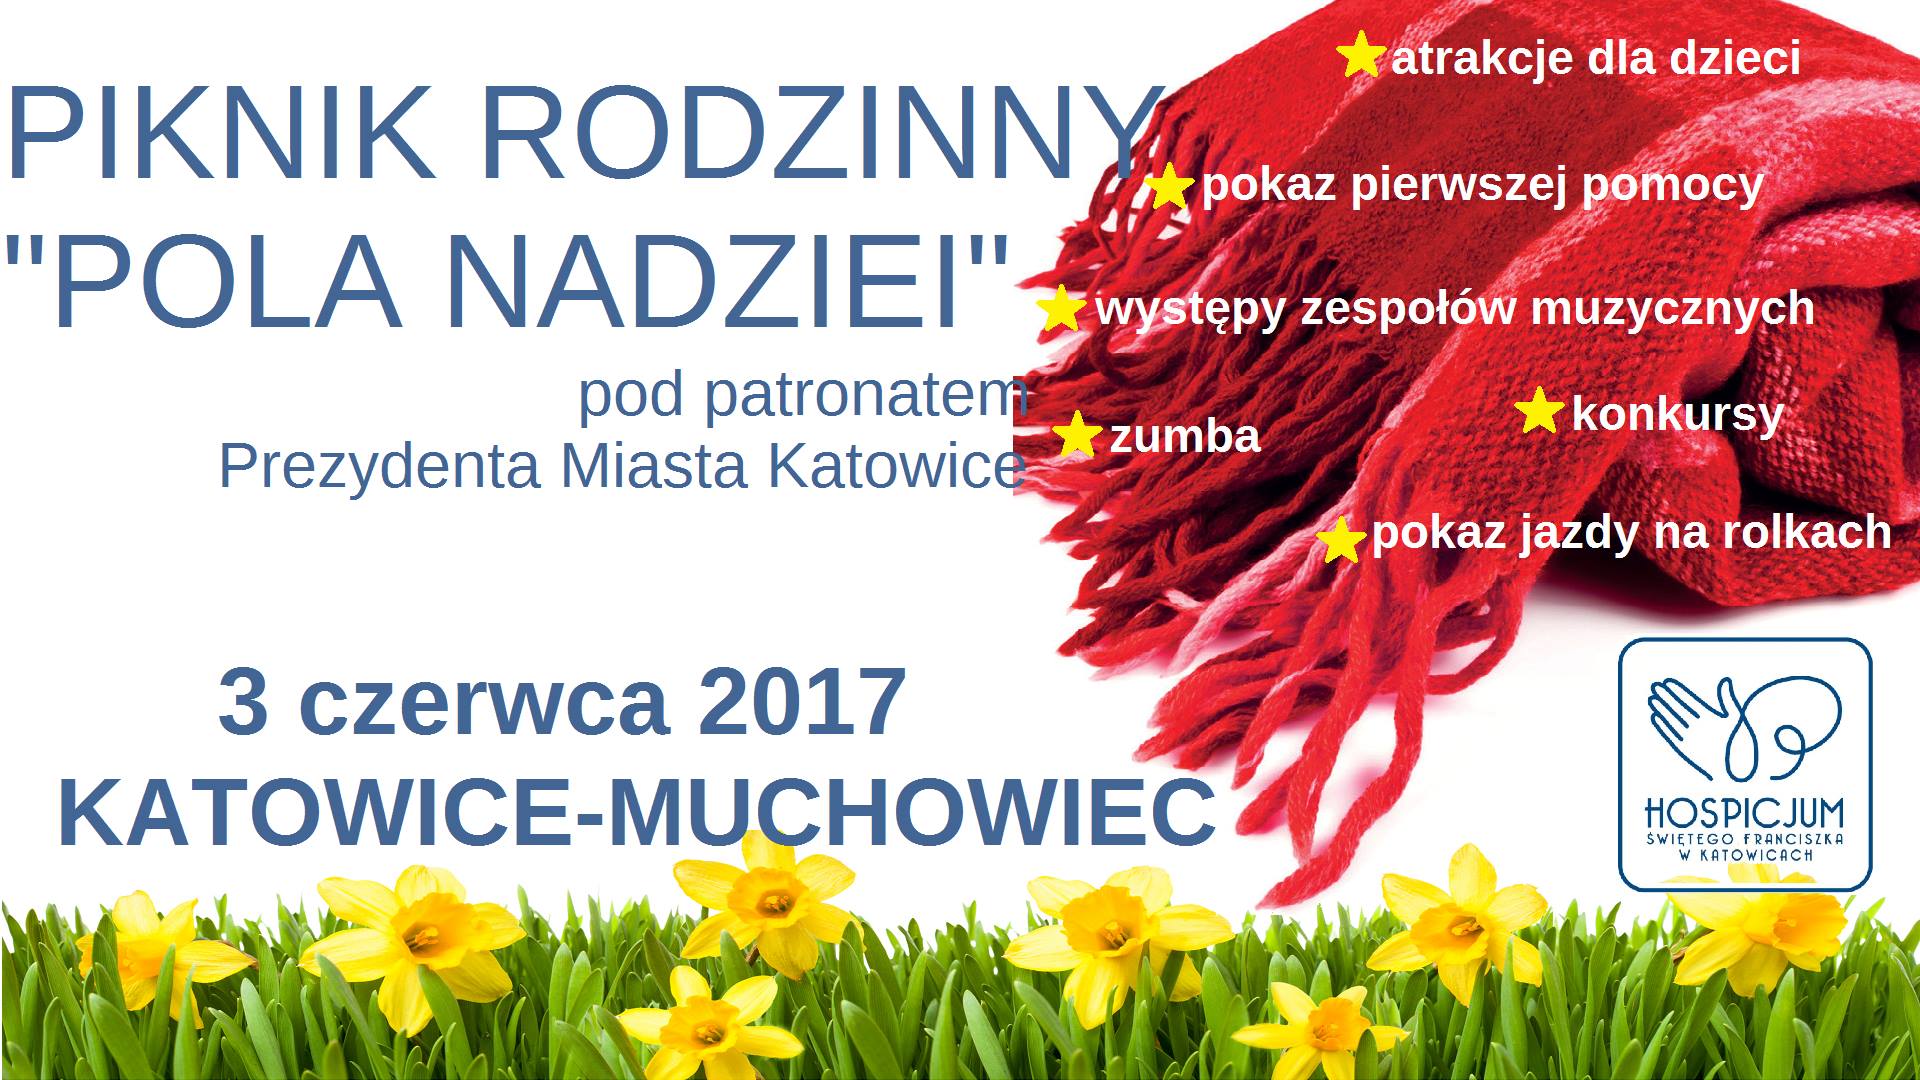 Piknik rodzinny Pola Nadziei 2017